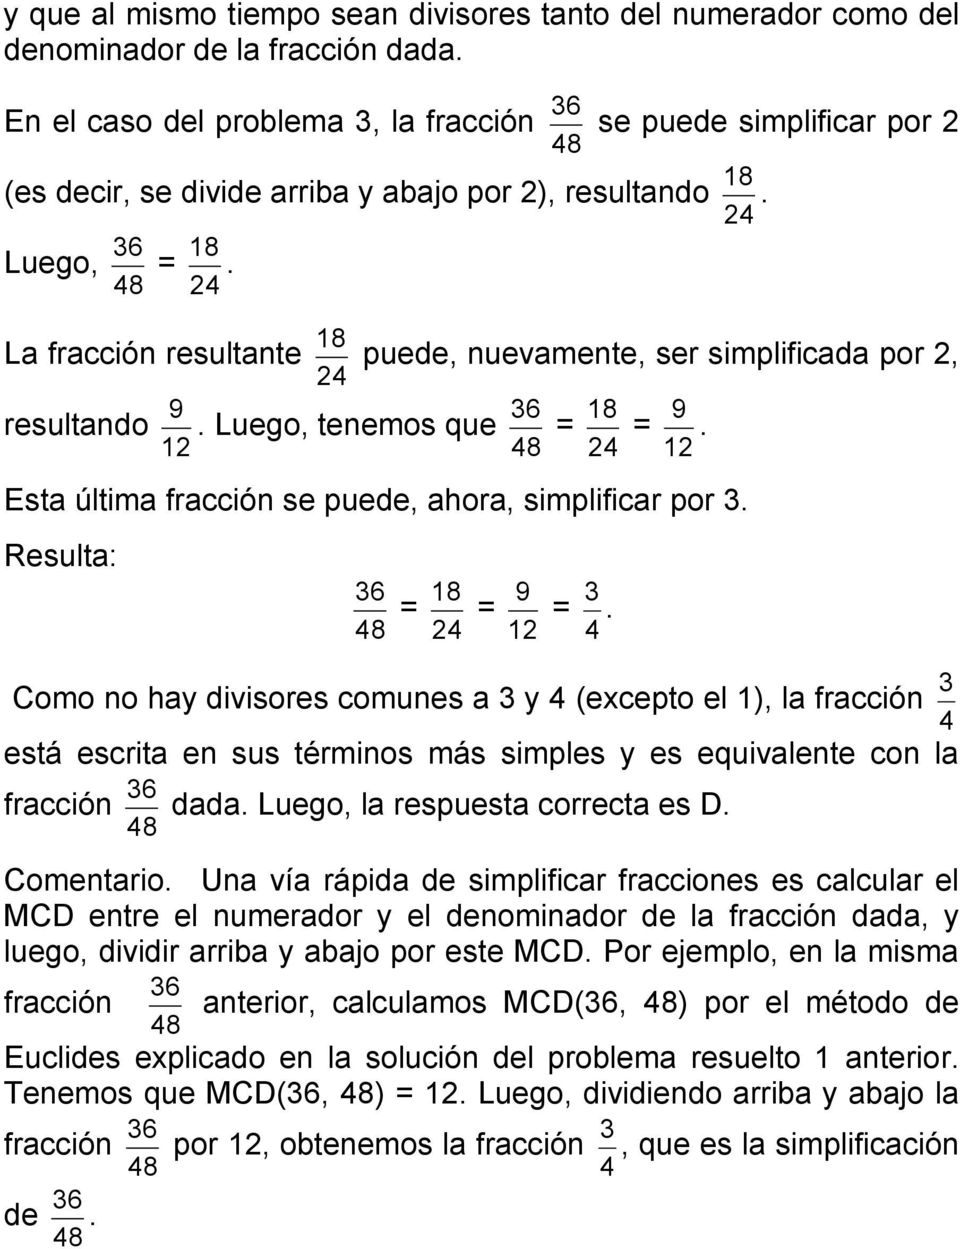 8 2 8 La fracción resultante puede, nuevamente, ser simplificada por 2, 2 9 6 8 9 resultando. Luego, tenemos que = =. 2 8 2 2 Esta última fracción se puede, ahora, simplificar por.